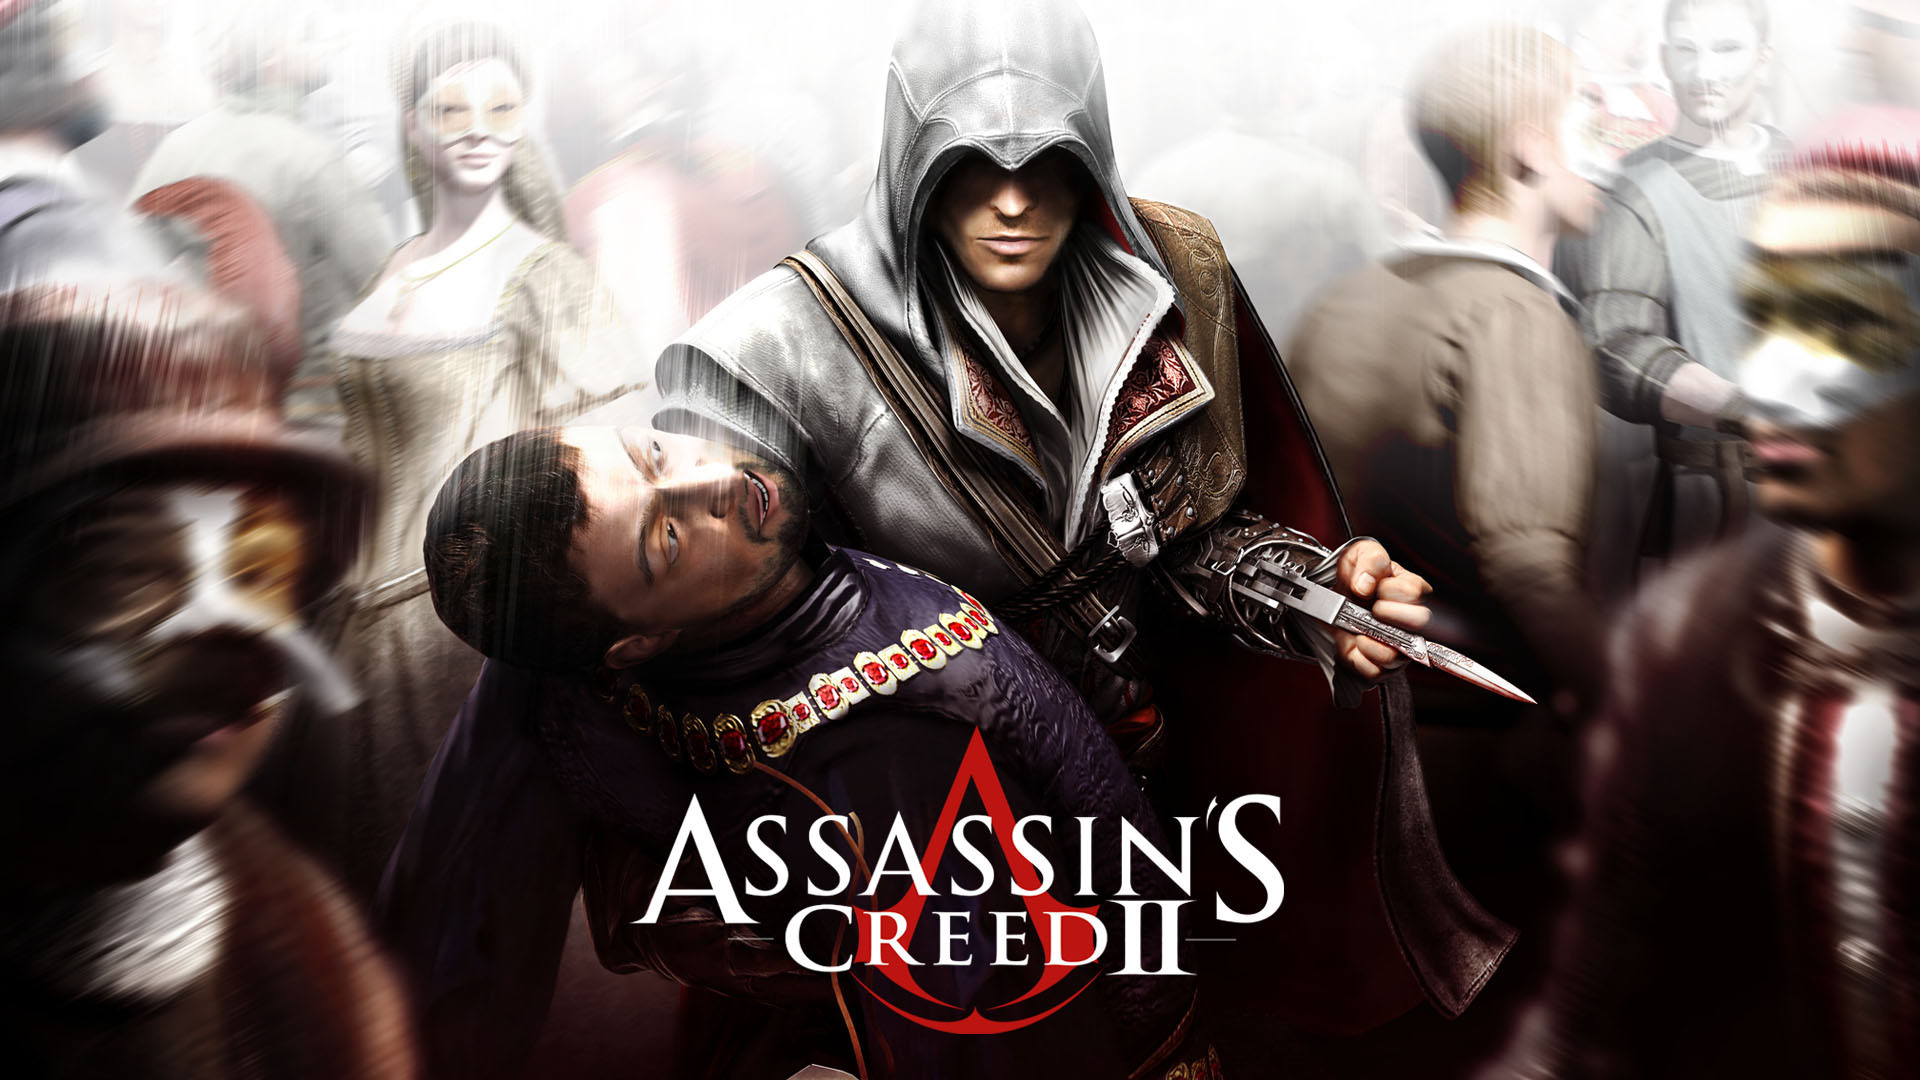 Assassin's Creed 2 Wallpaper by CrossDominatriX5 on DeviantArt